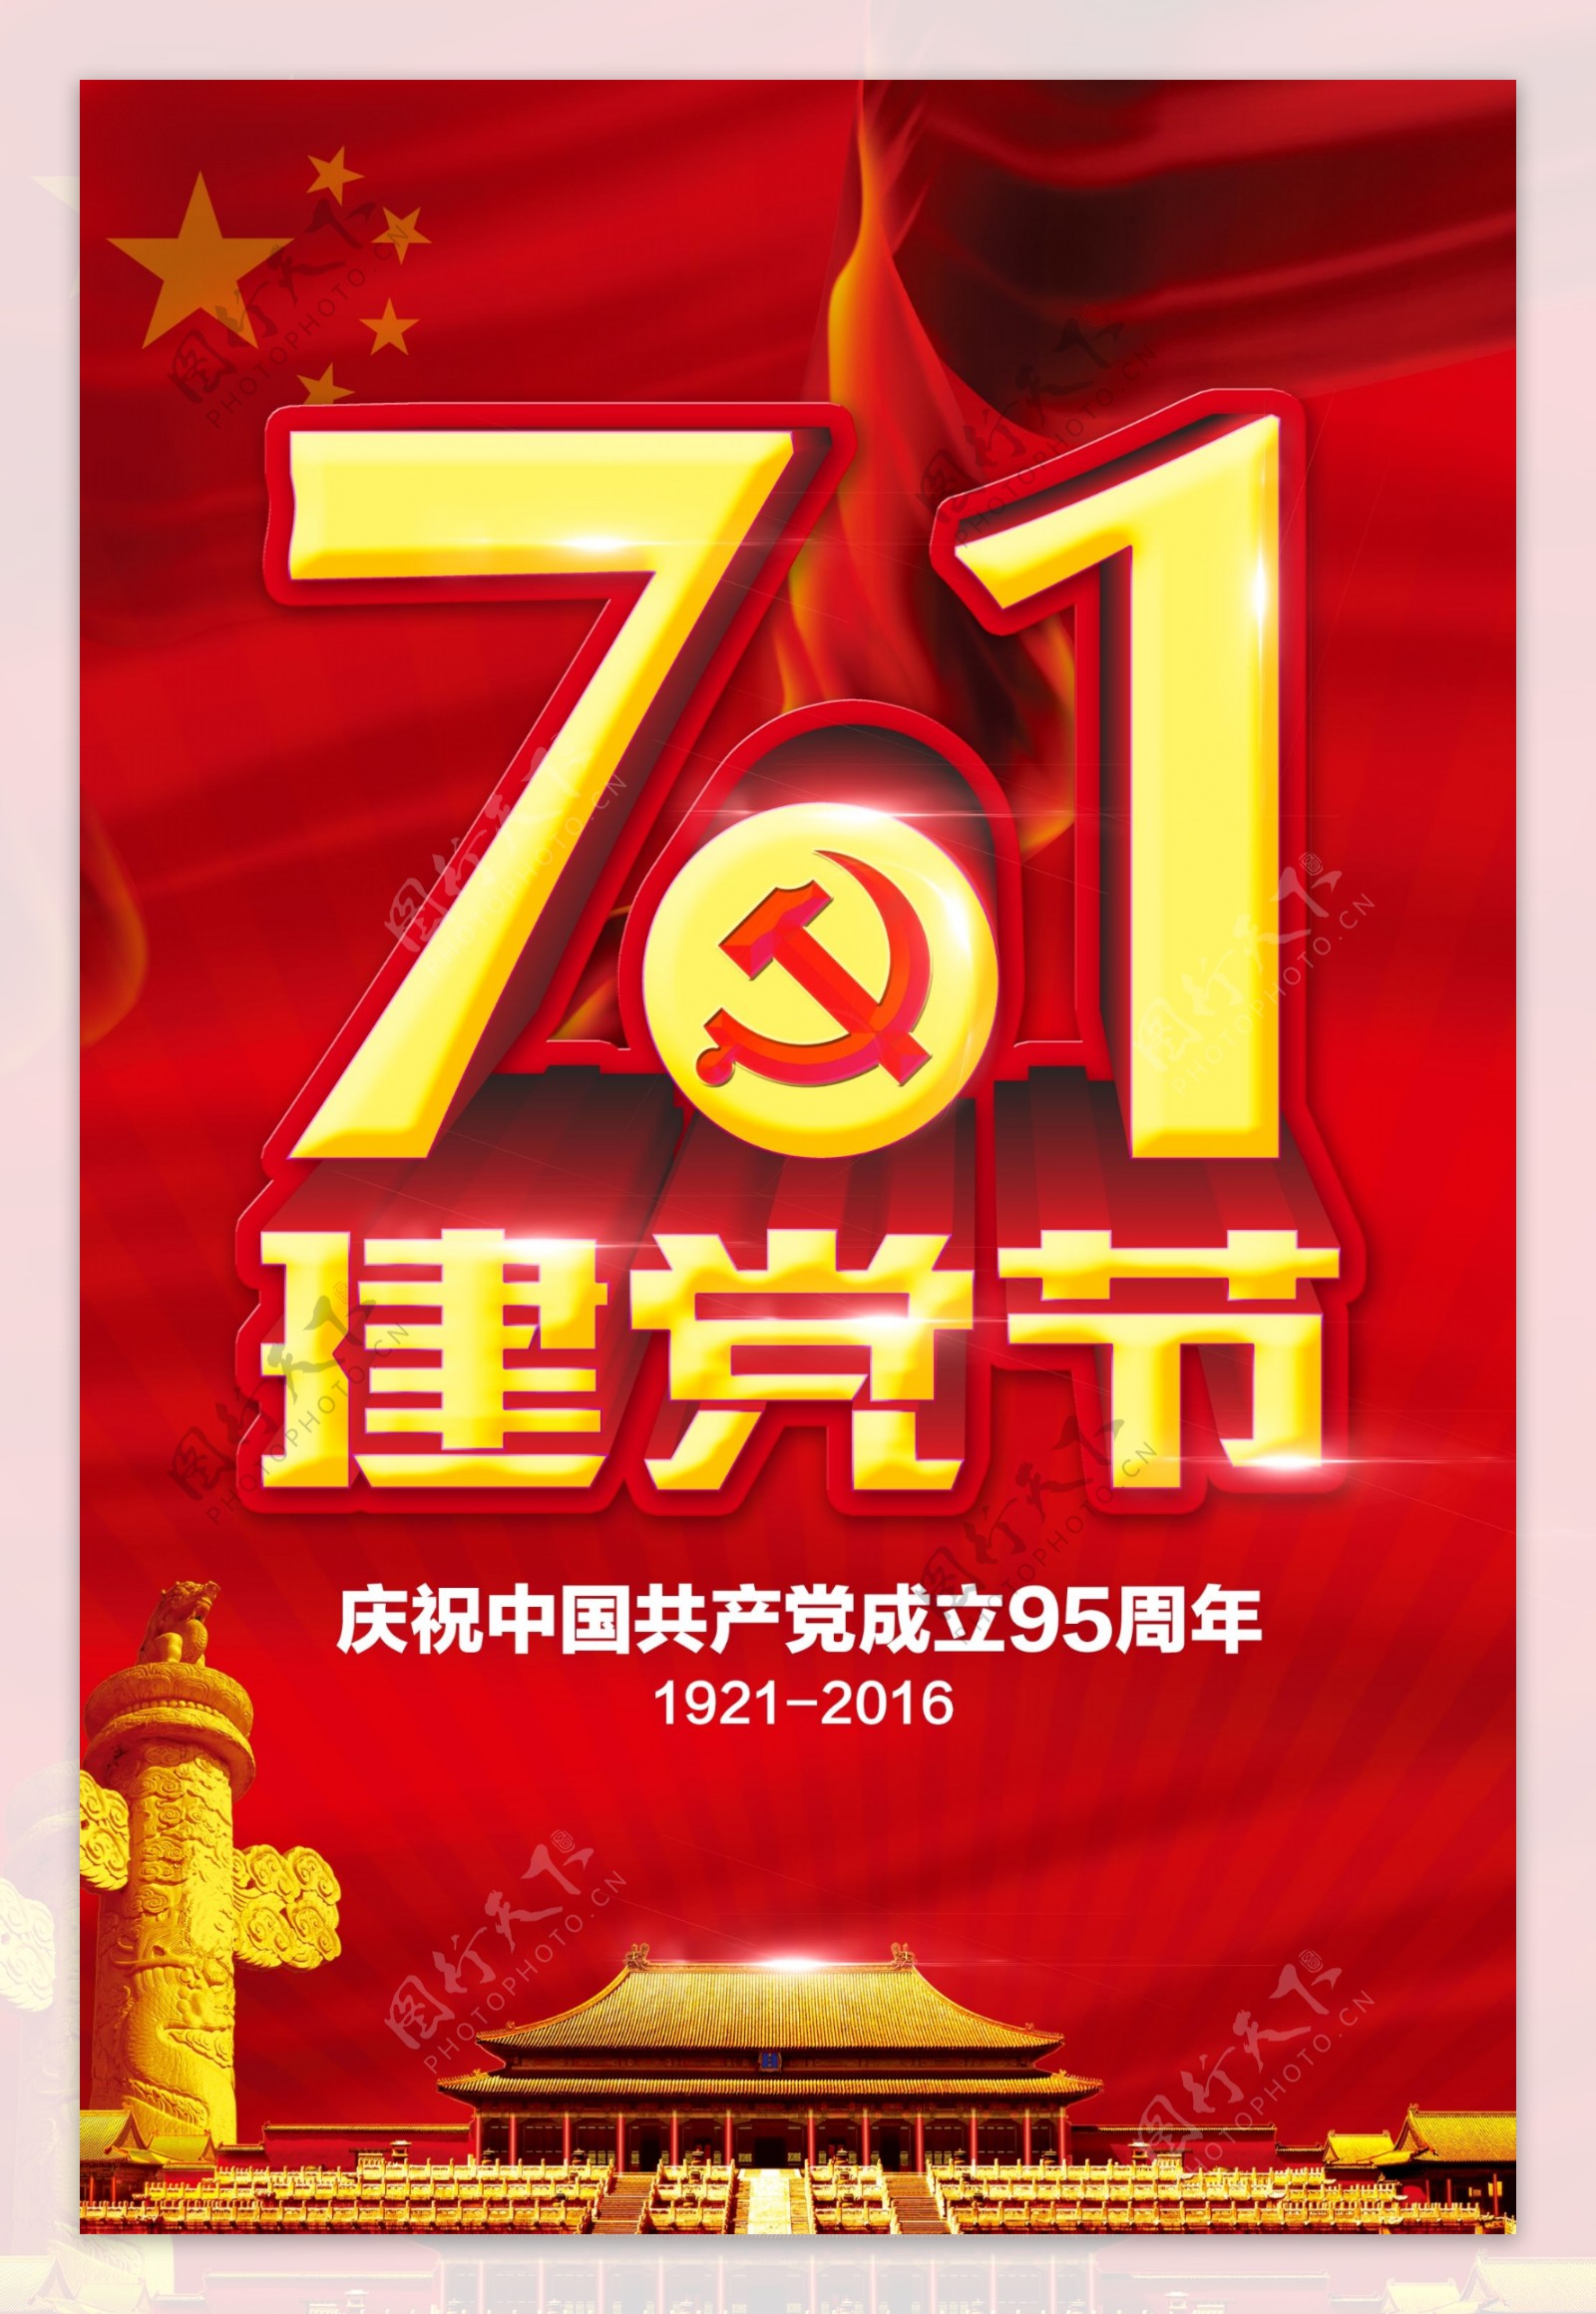 七一建党节95周年宣传海报psd素材